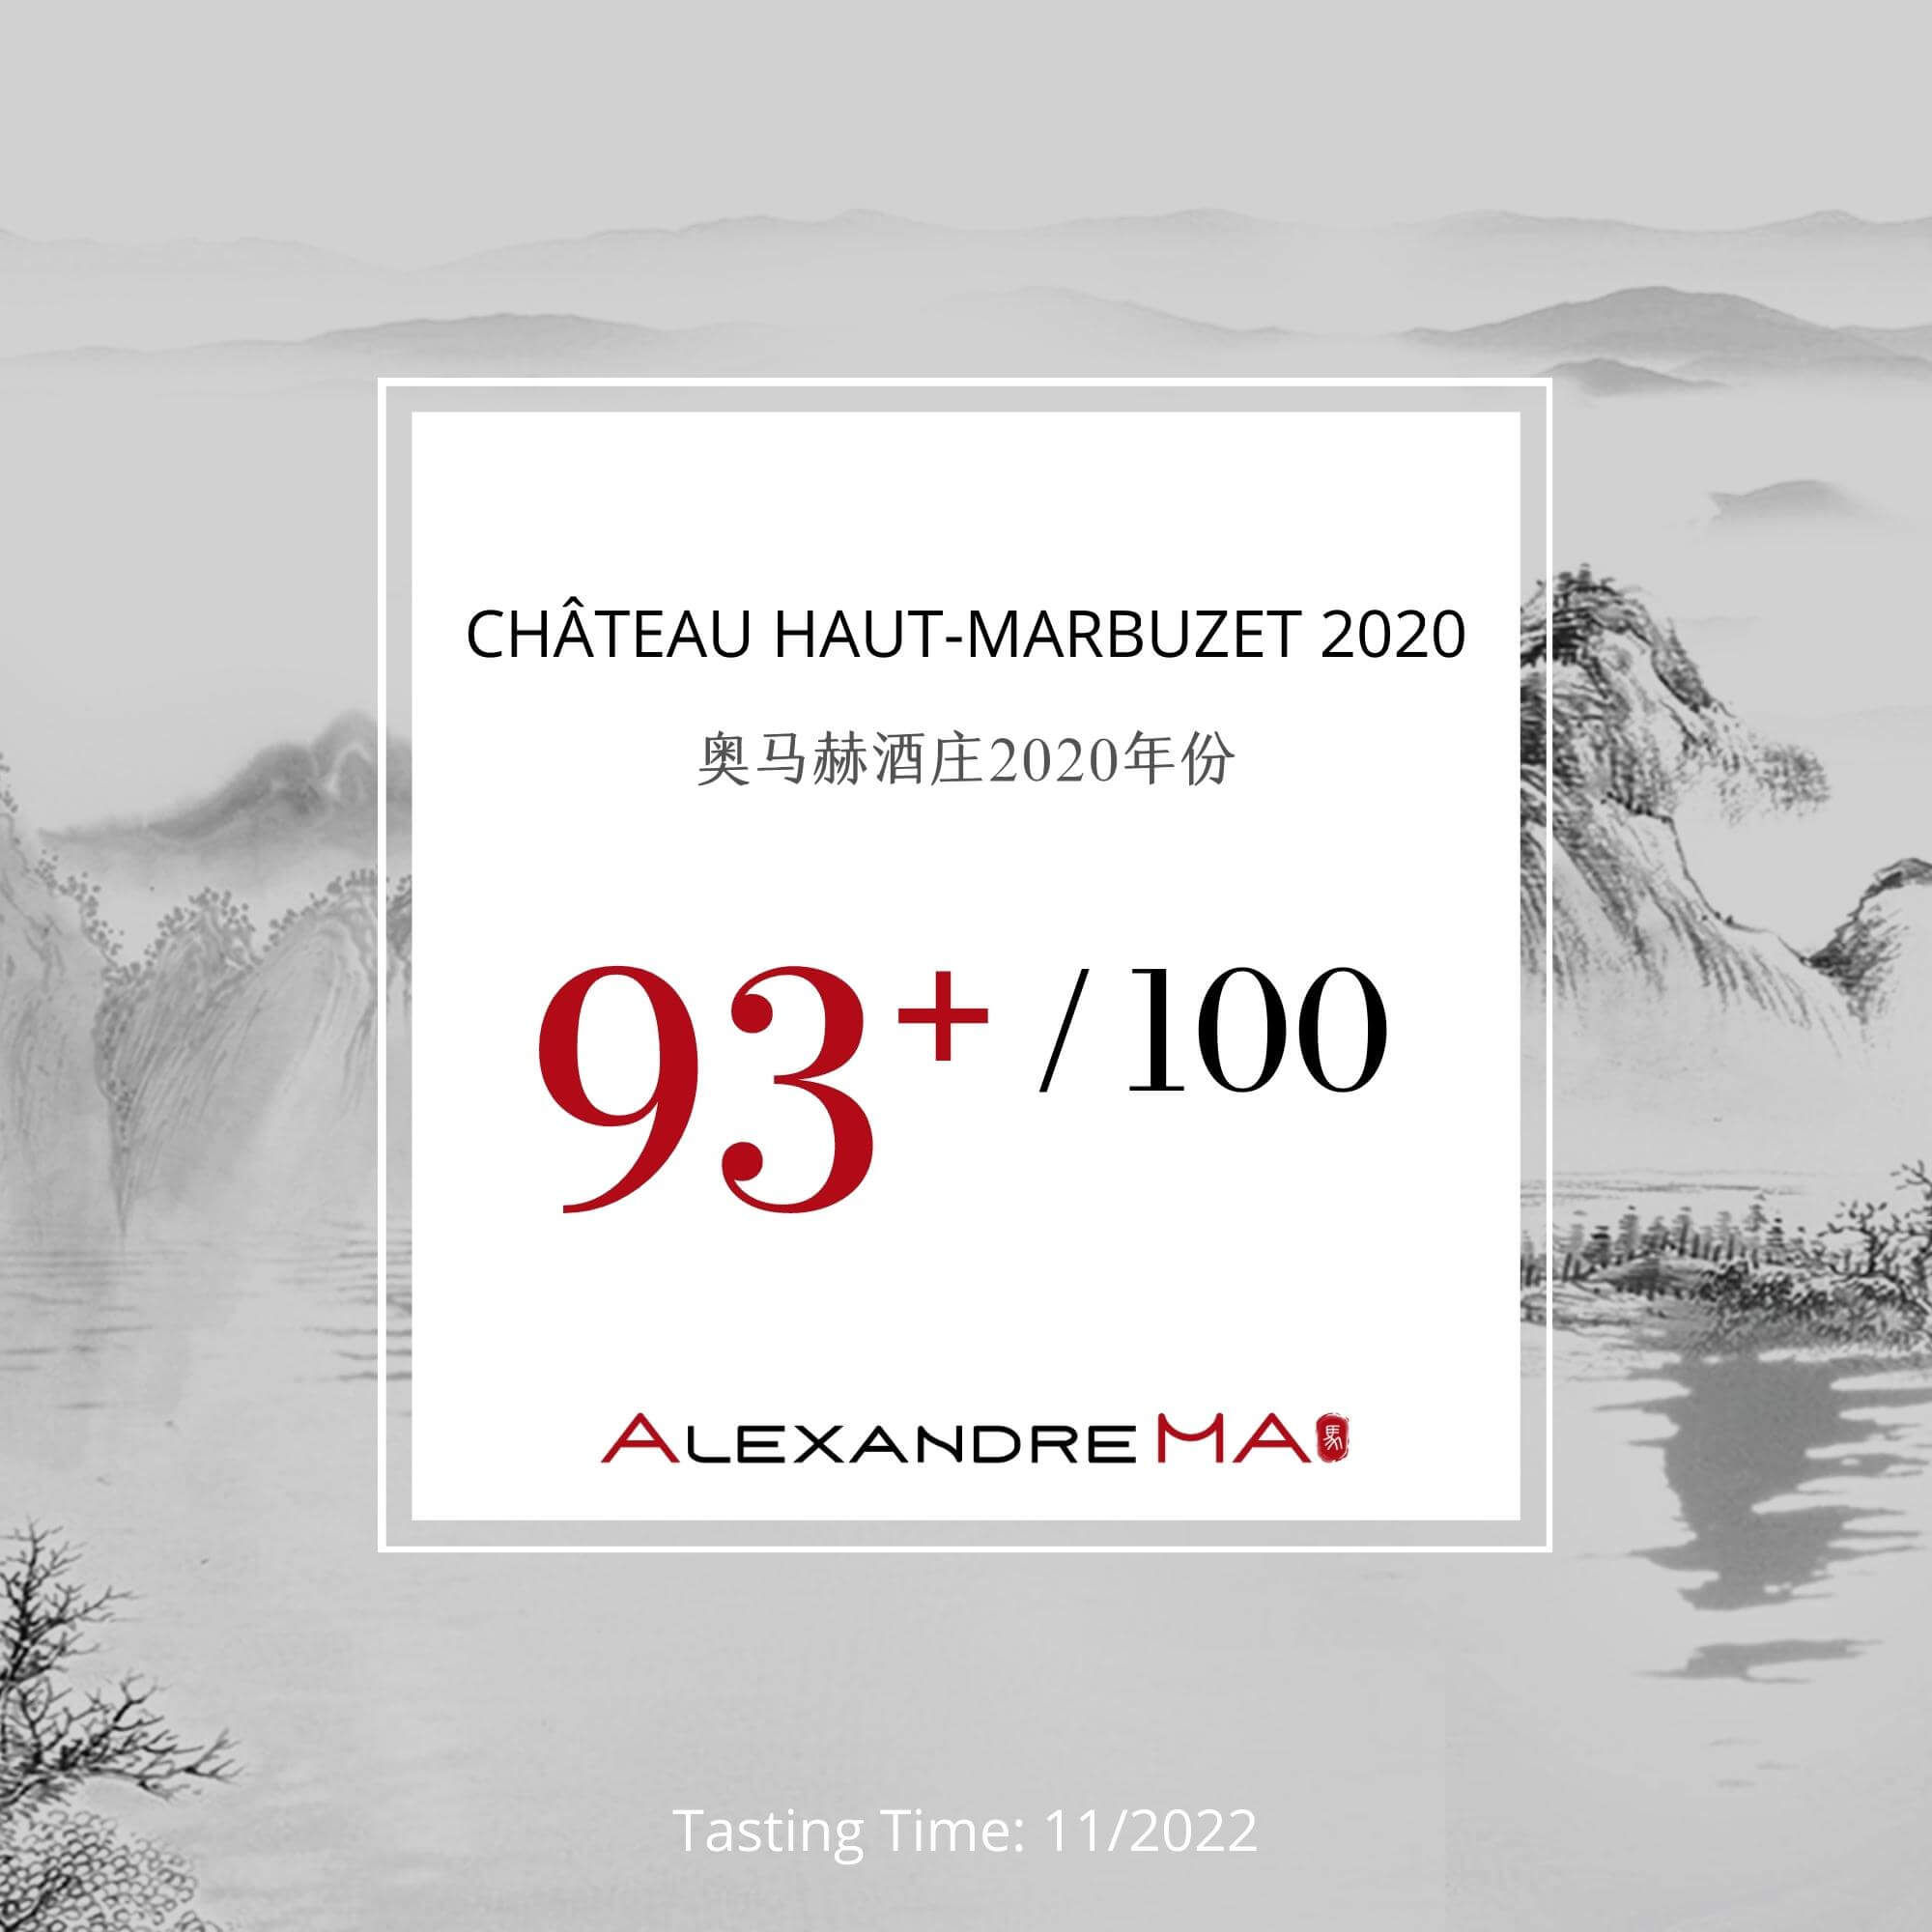 Château Haut-Marbuzet 2020 - Alexandre MA